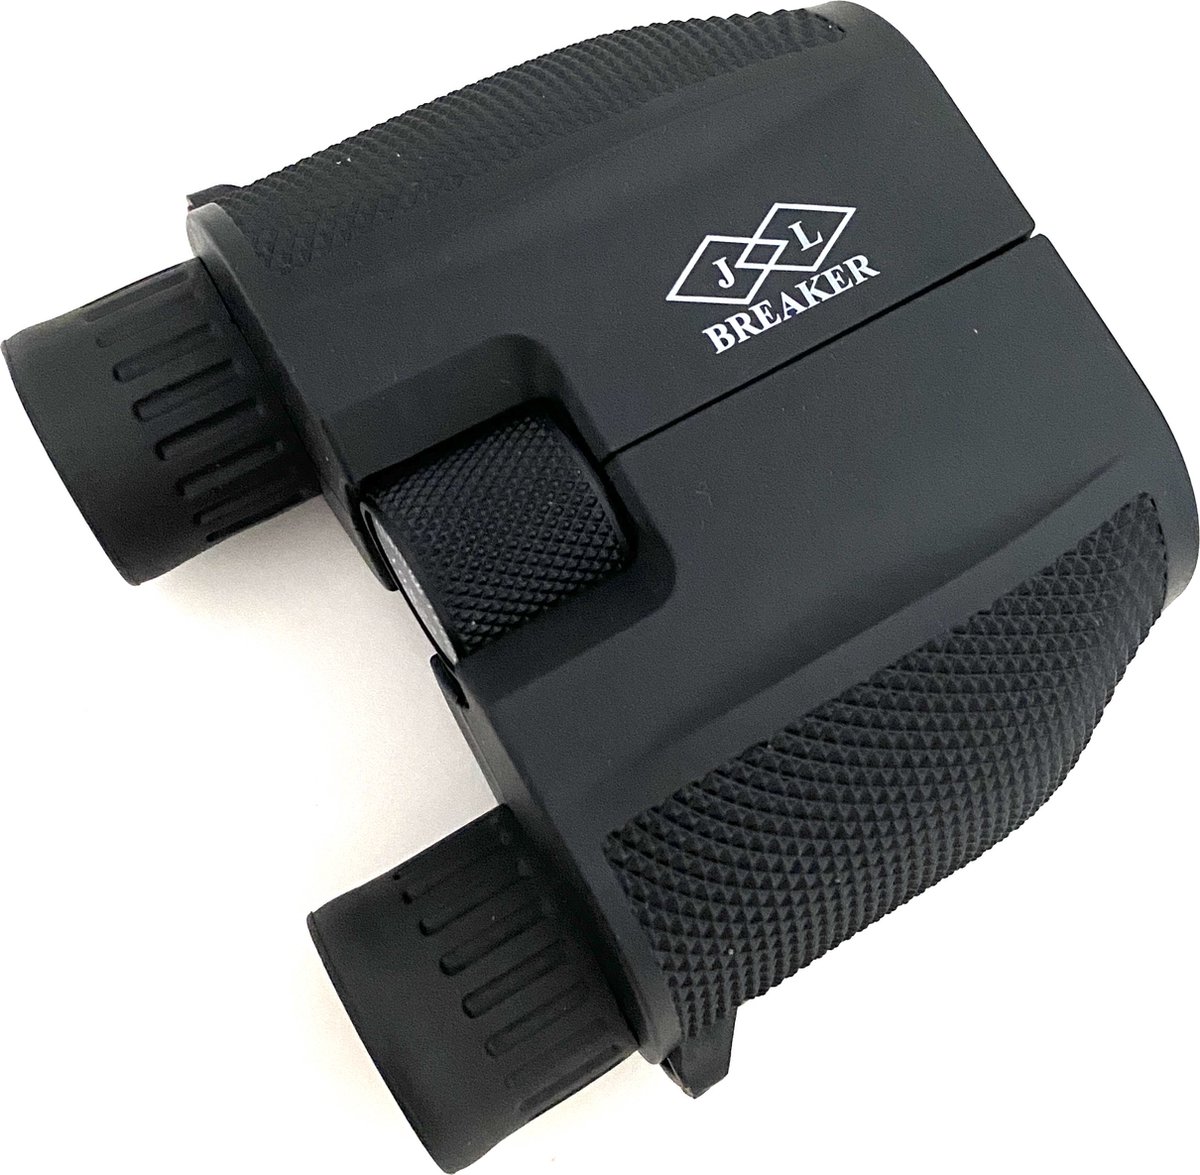 JL BREAKER Mini Verrekijker - Verrekijker voor kinderen - Kinder verrekijker - 10x25 - Zwart - Binoculars